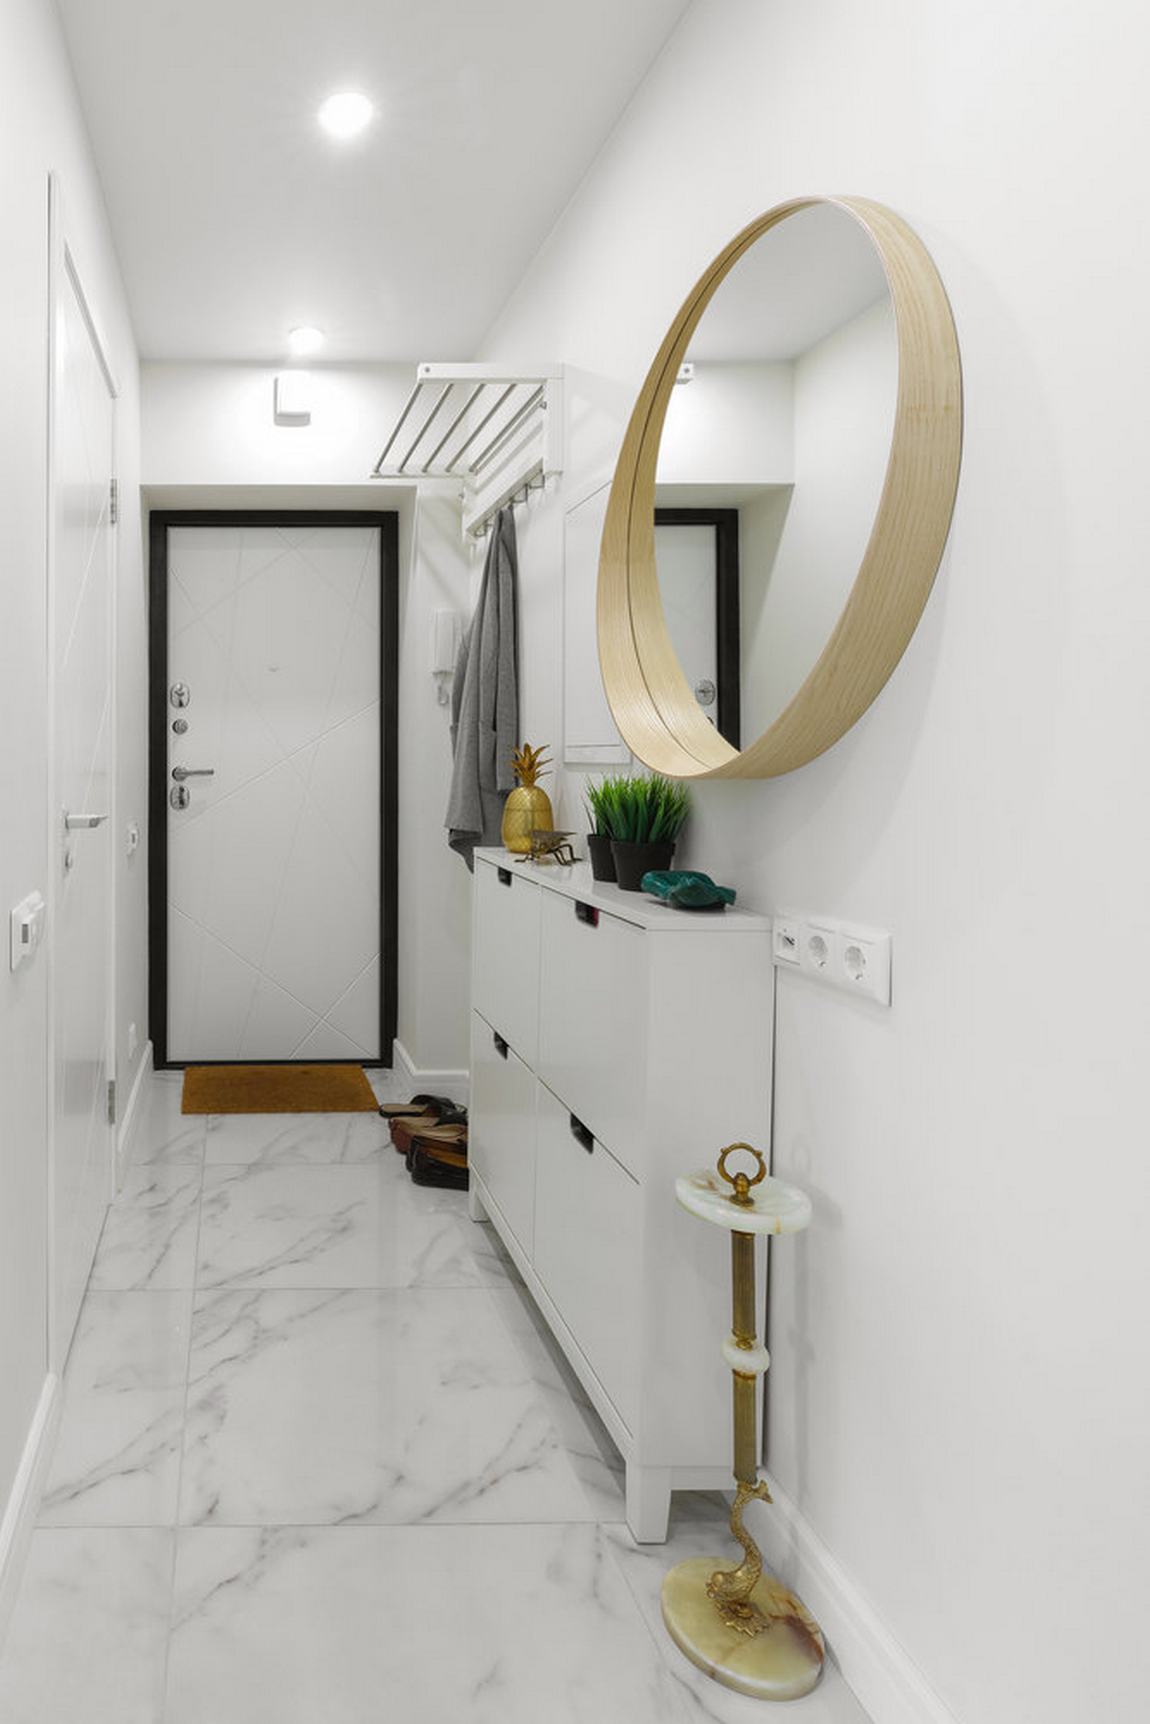 Lối vào căn hộ xinh xắn với tường sơn trắng sạch sẽ, sàn nhà lát đá cẩm thạch sáng bóng, cánh cửa viền khung màu đen tạo điểm nhấn vào chiều sâu cho lối vào nhỏ hẹp.